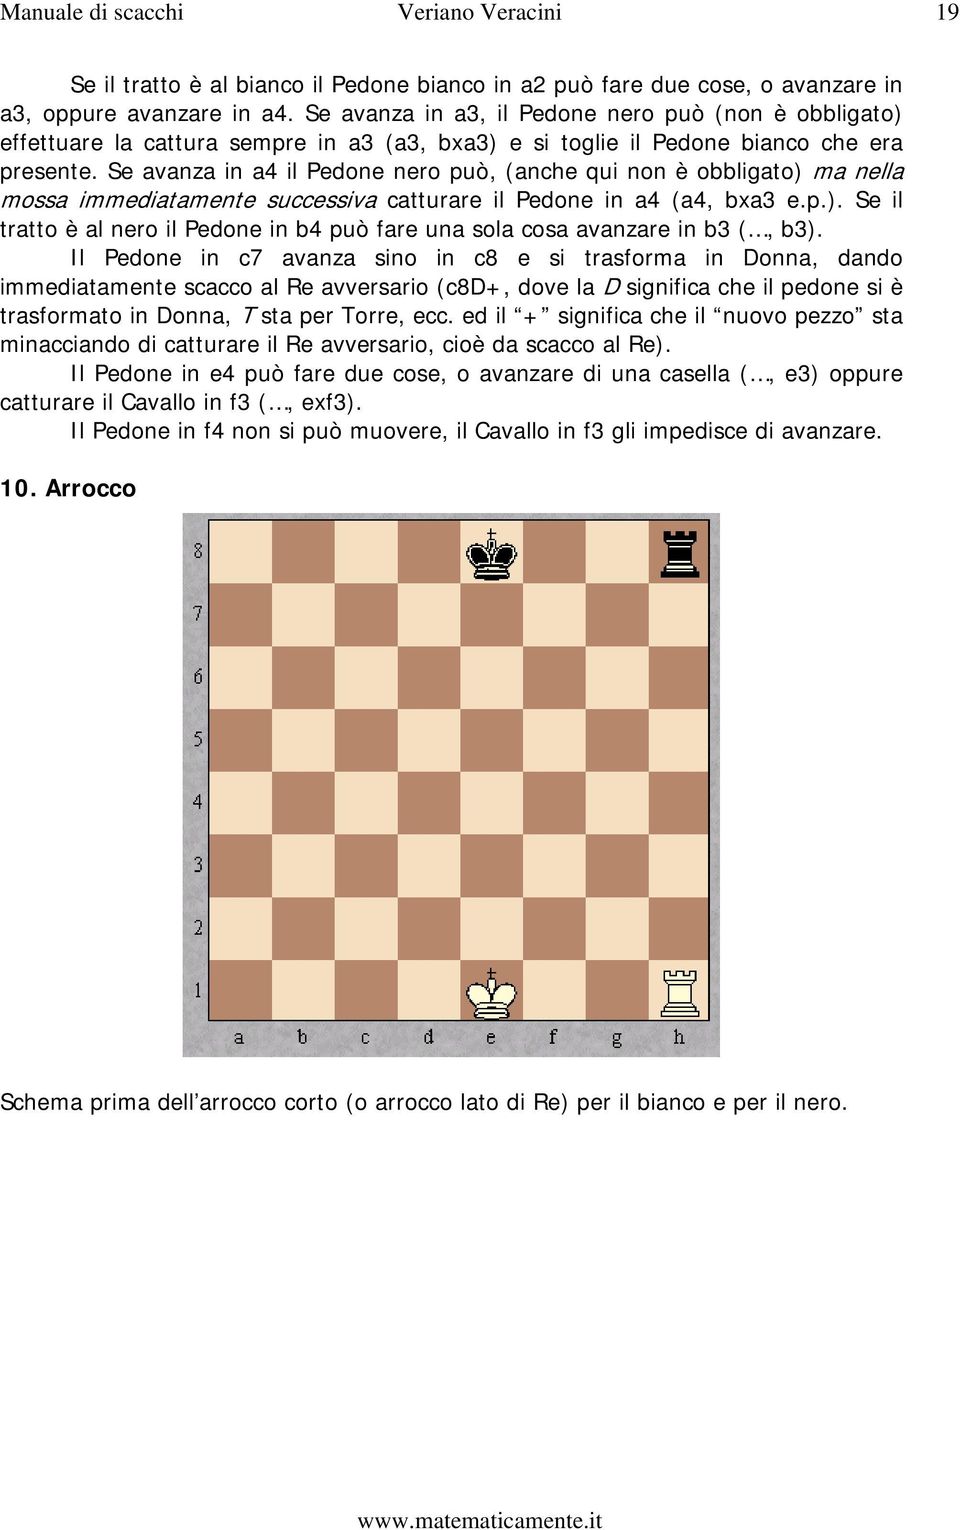 Se avanza in a4 il Pedone nero può, (anche qui non è obbligato) ma nella mossa immediatamente successiva catturare il Pedone in a4 (a4, bxa3 e.p.). Se il tratto è al nero il Pedone in b4 può fare una sola cosa avanzare in b3 (, b3).